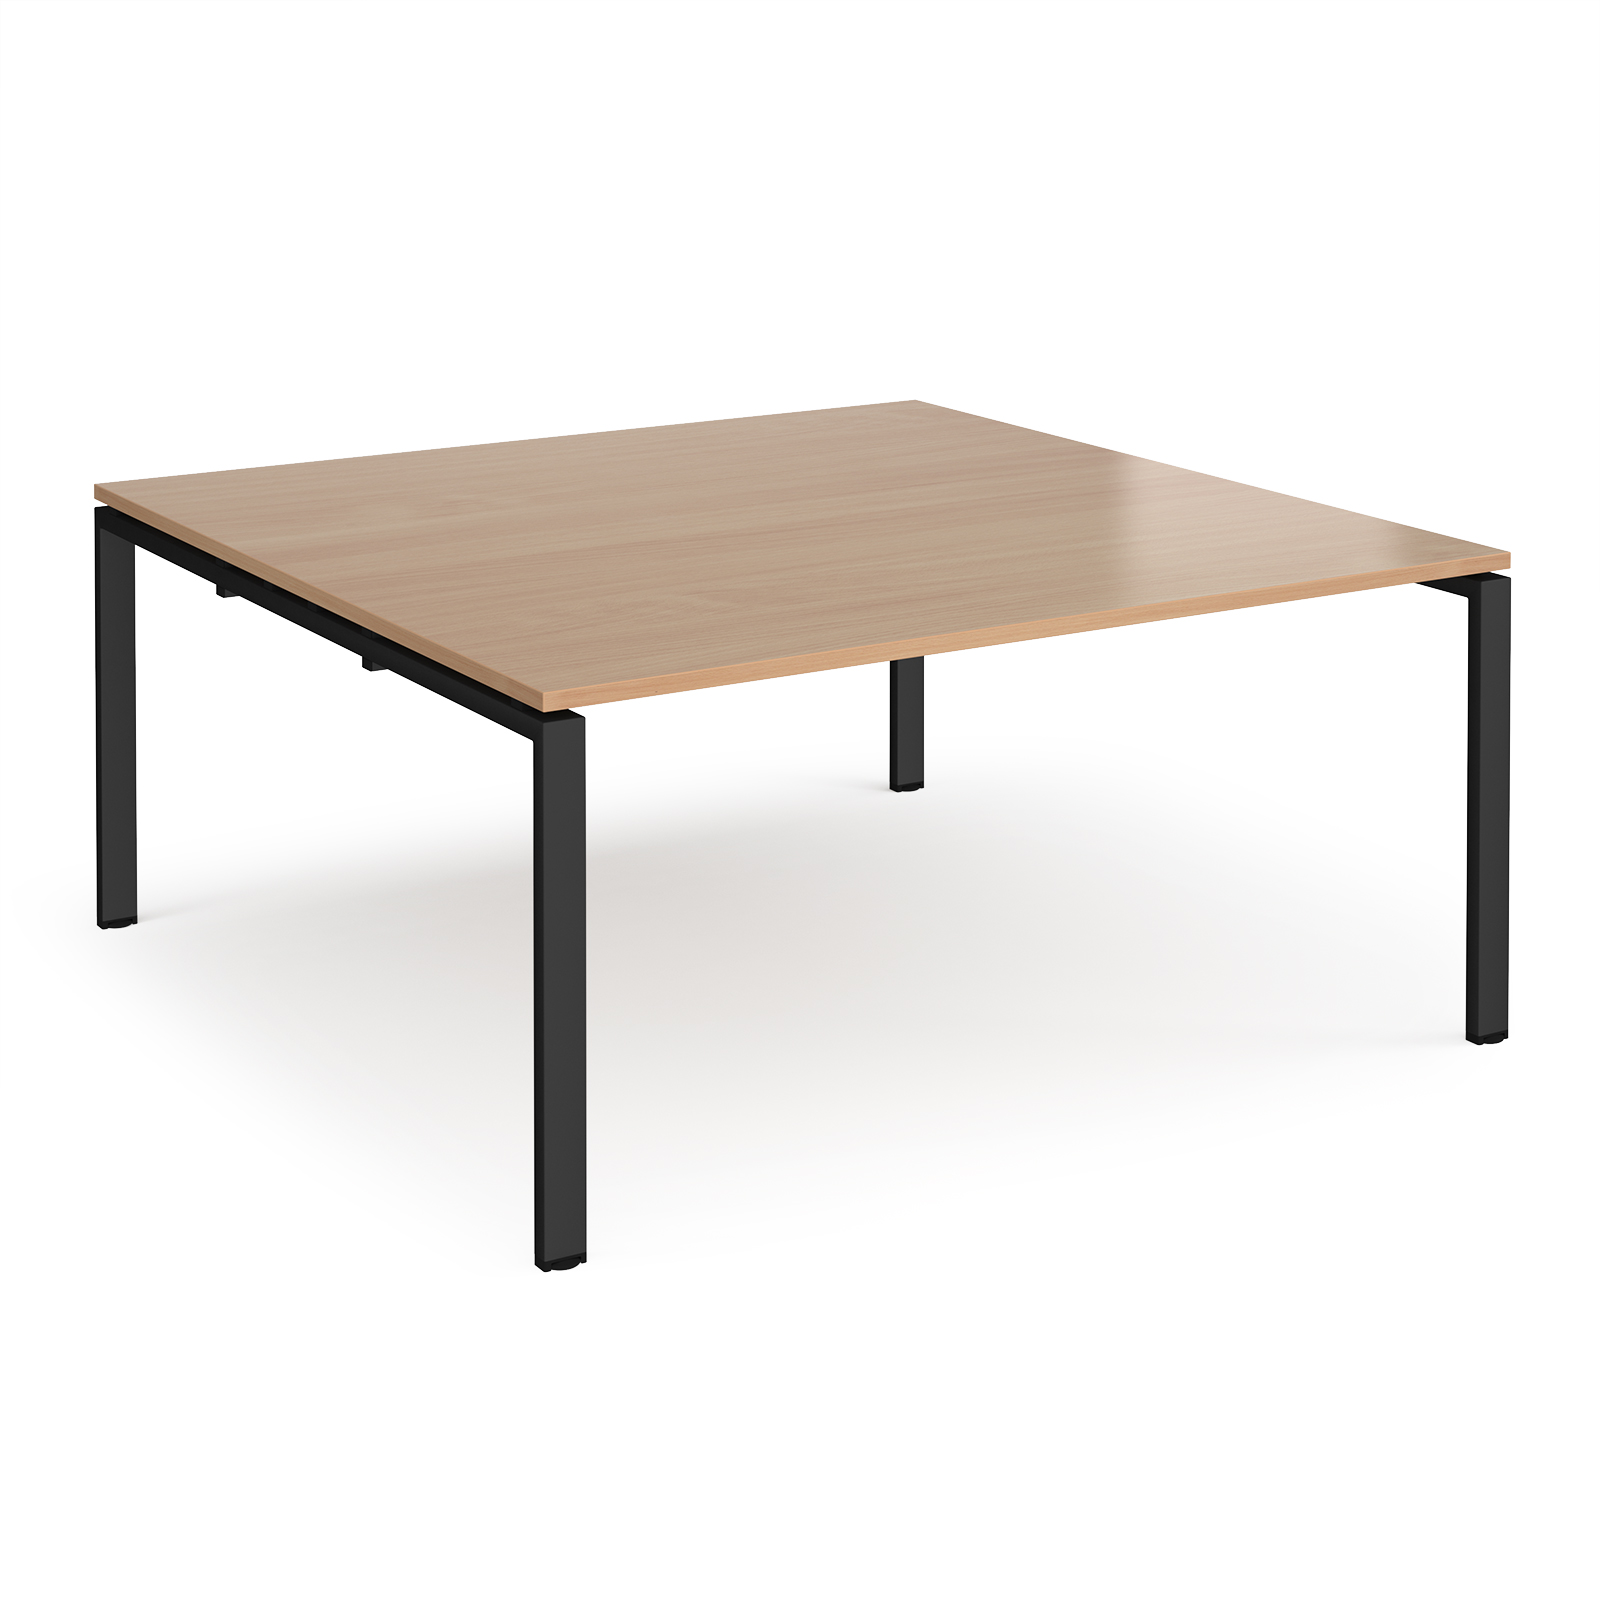 Adapt square boardroom table